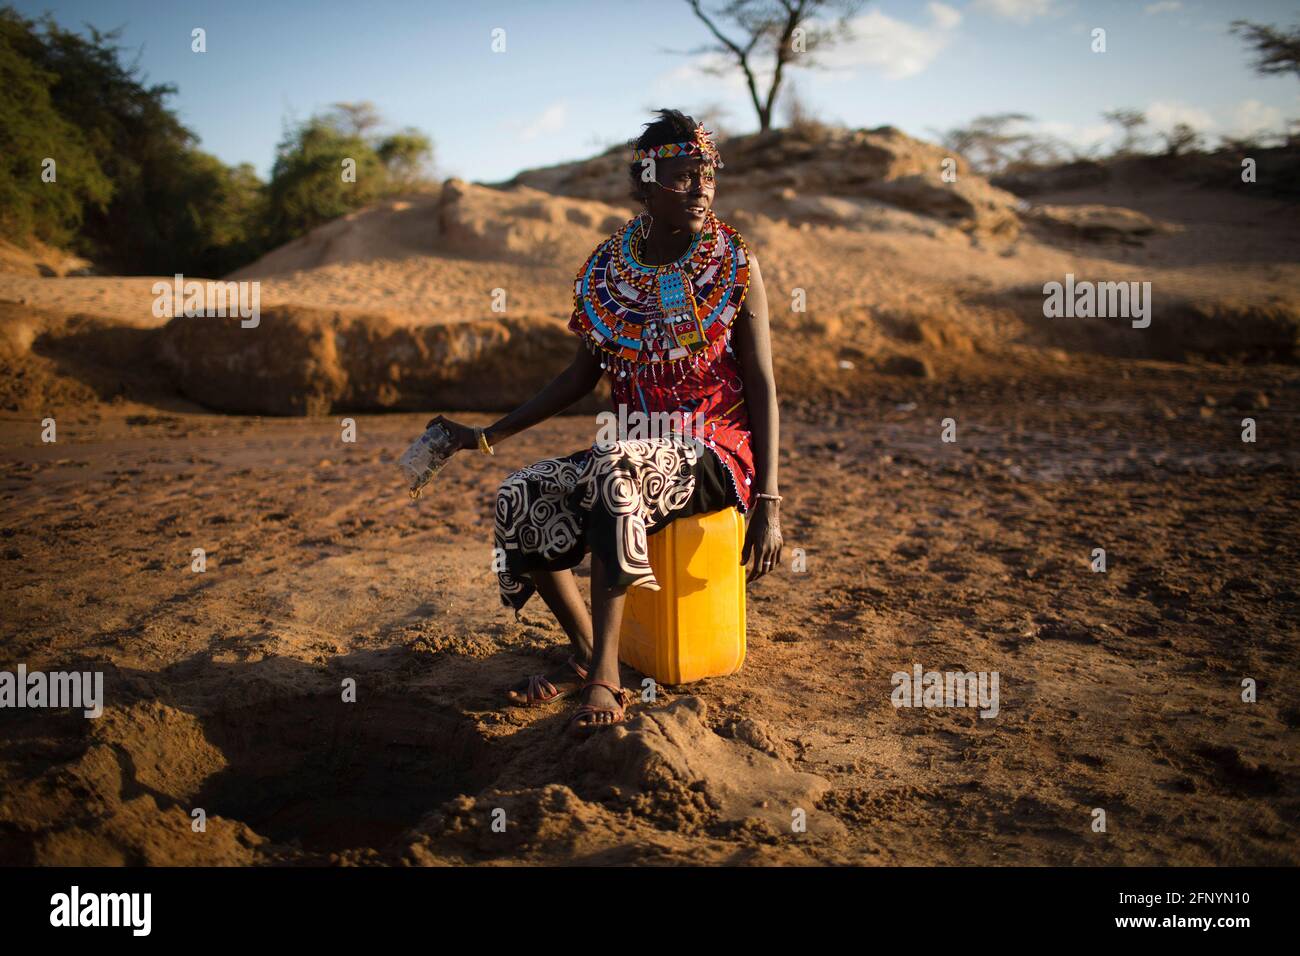 Le 19 février 2015, une femme recueille de l'eau filtrée nettoyée dans un trou creusé près d'une rivière près du village d'Umoja à Samburu, au Kenya. Banque D'Images